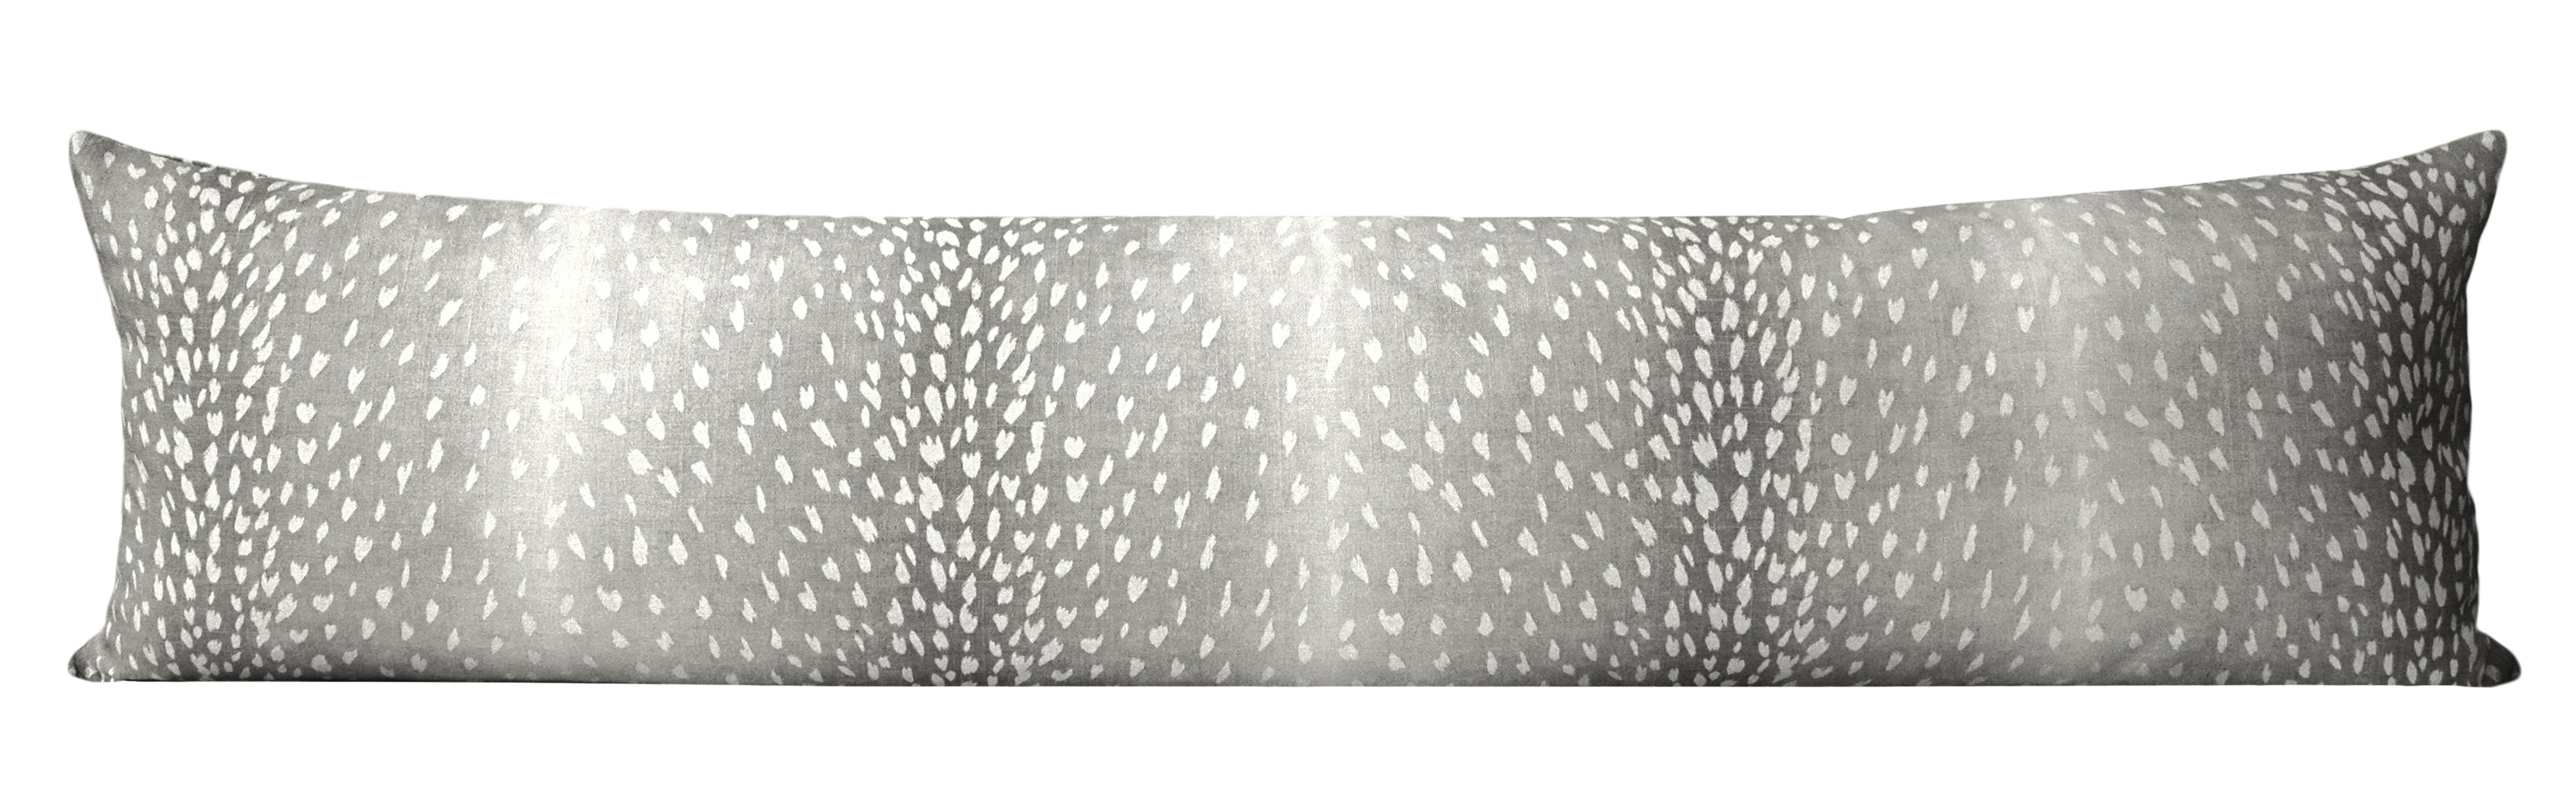 The XL Lumbar :: Antelope Linen Print // Charcoal - 14" X 48" - Image 1